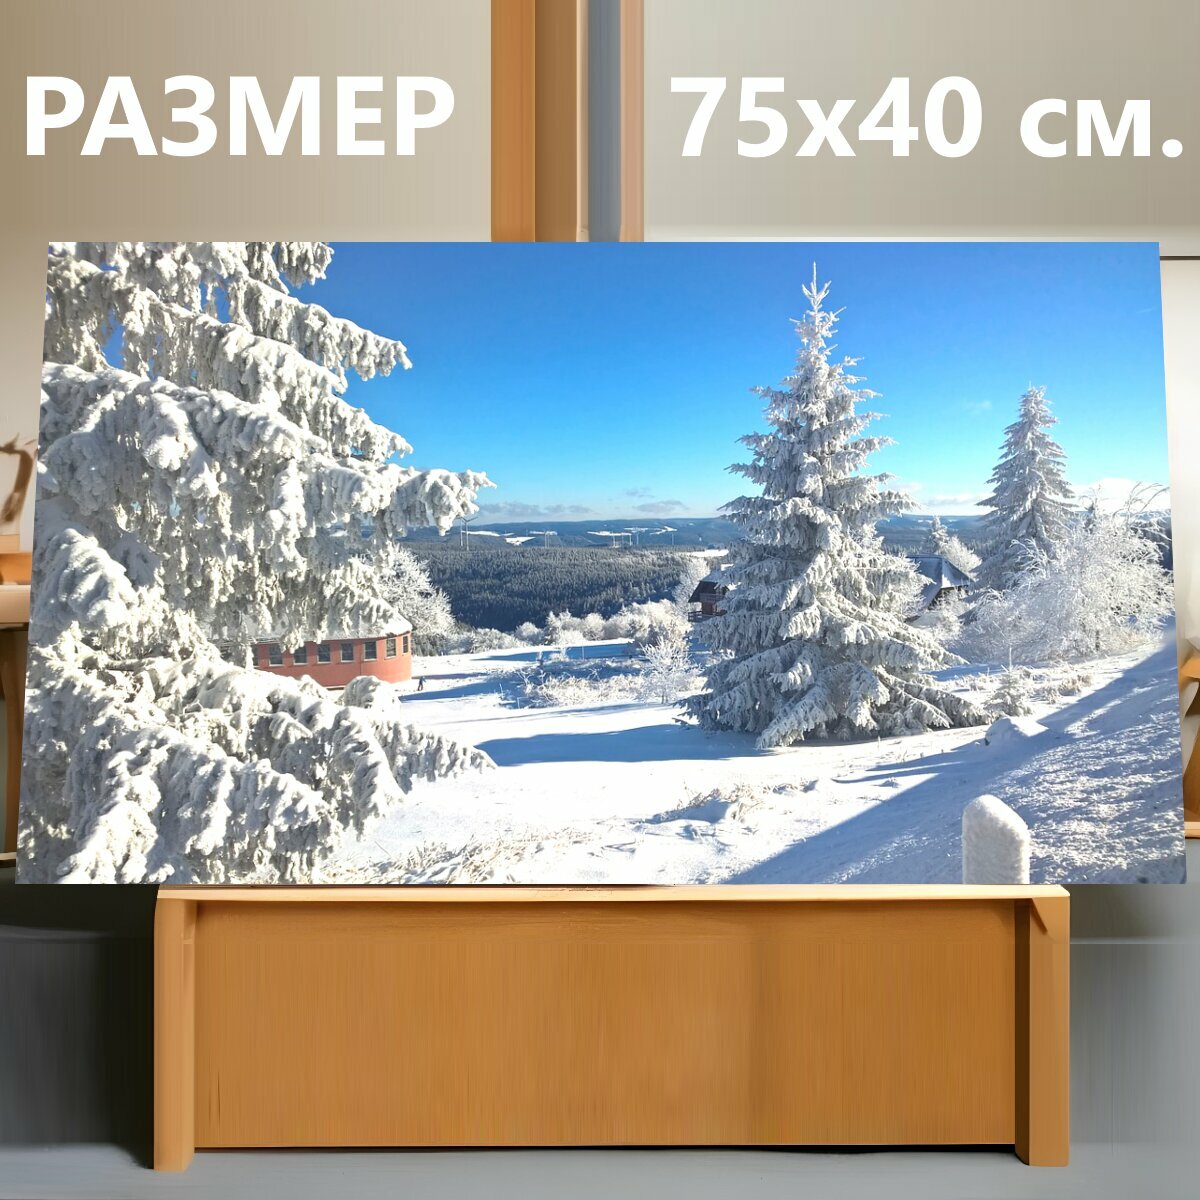 Картина на холсте "Снег, церковь, пейзаж" на подрамнике 75х40 см. для интерьера